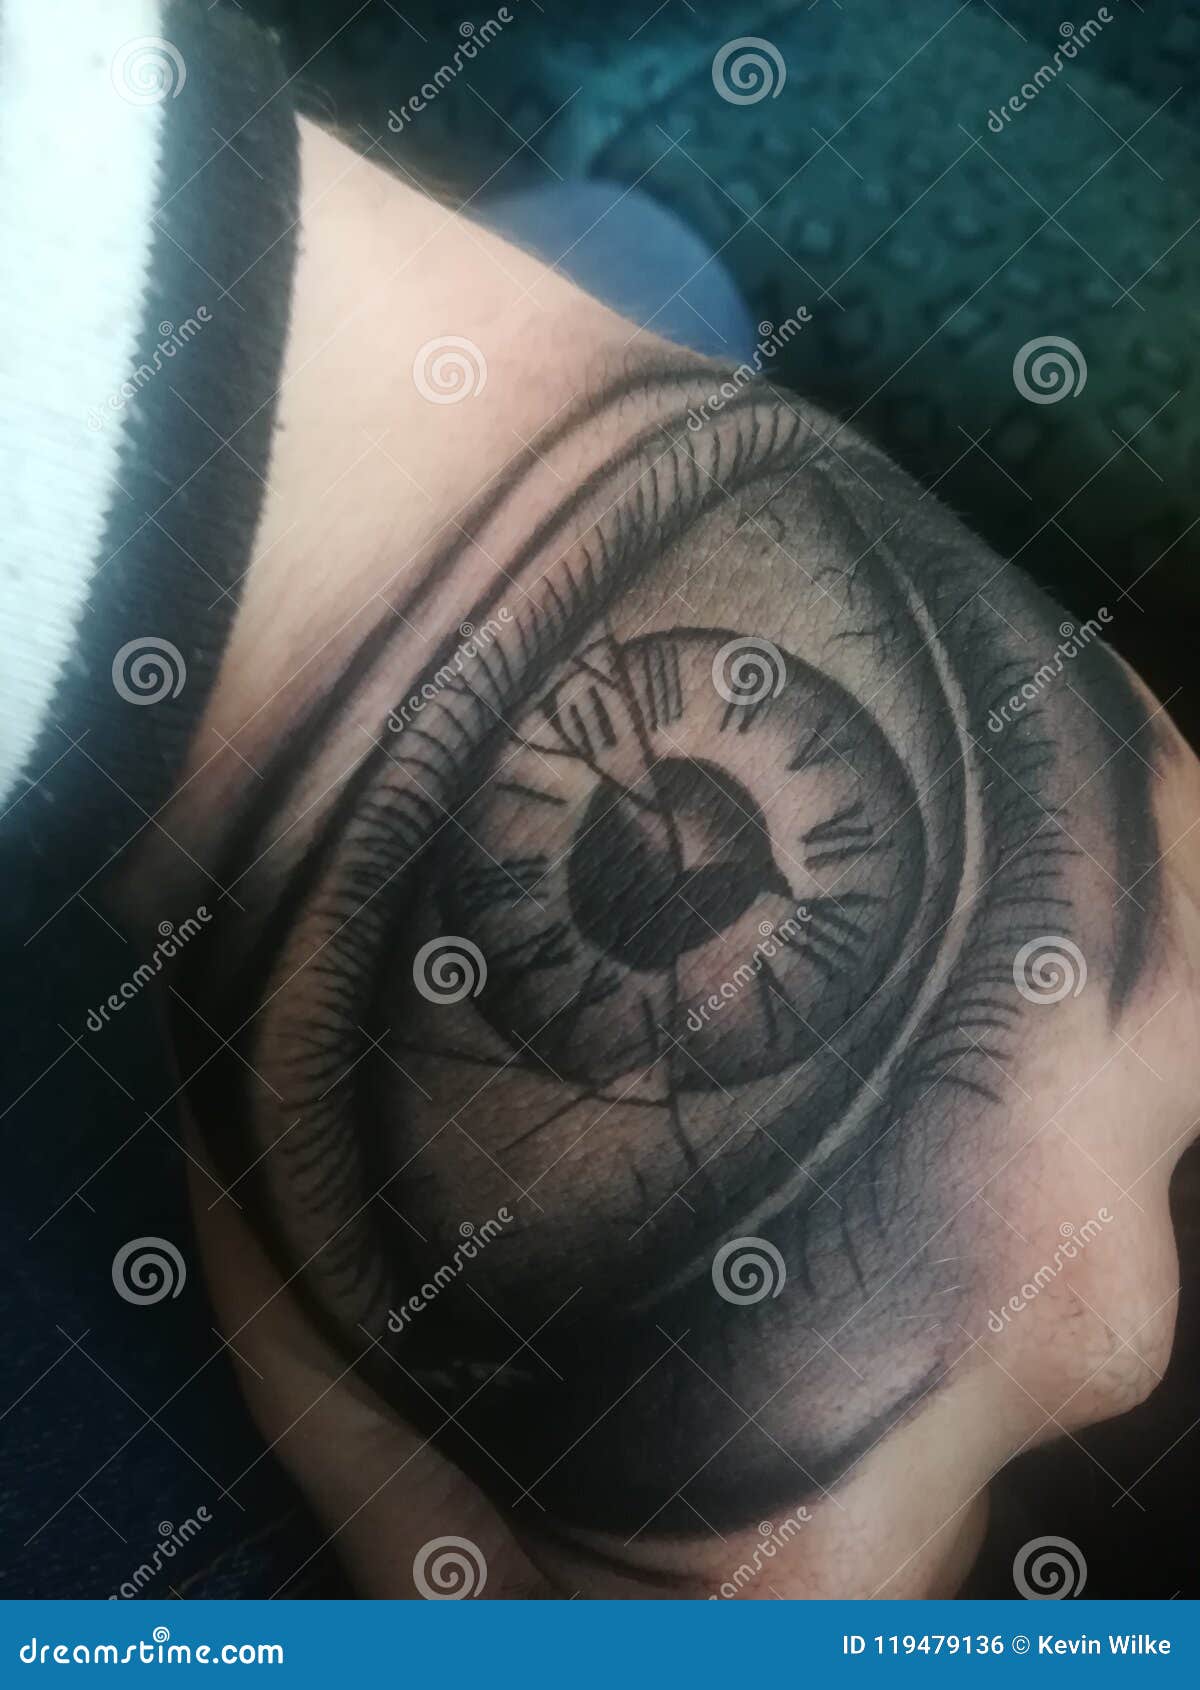 Tattoo uploaded by Jess Warshefskie • Eye with a broken clock face •  Tattoodo